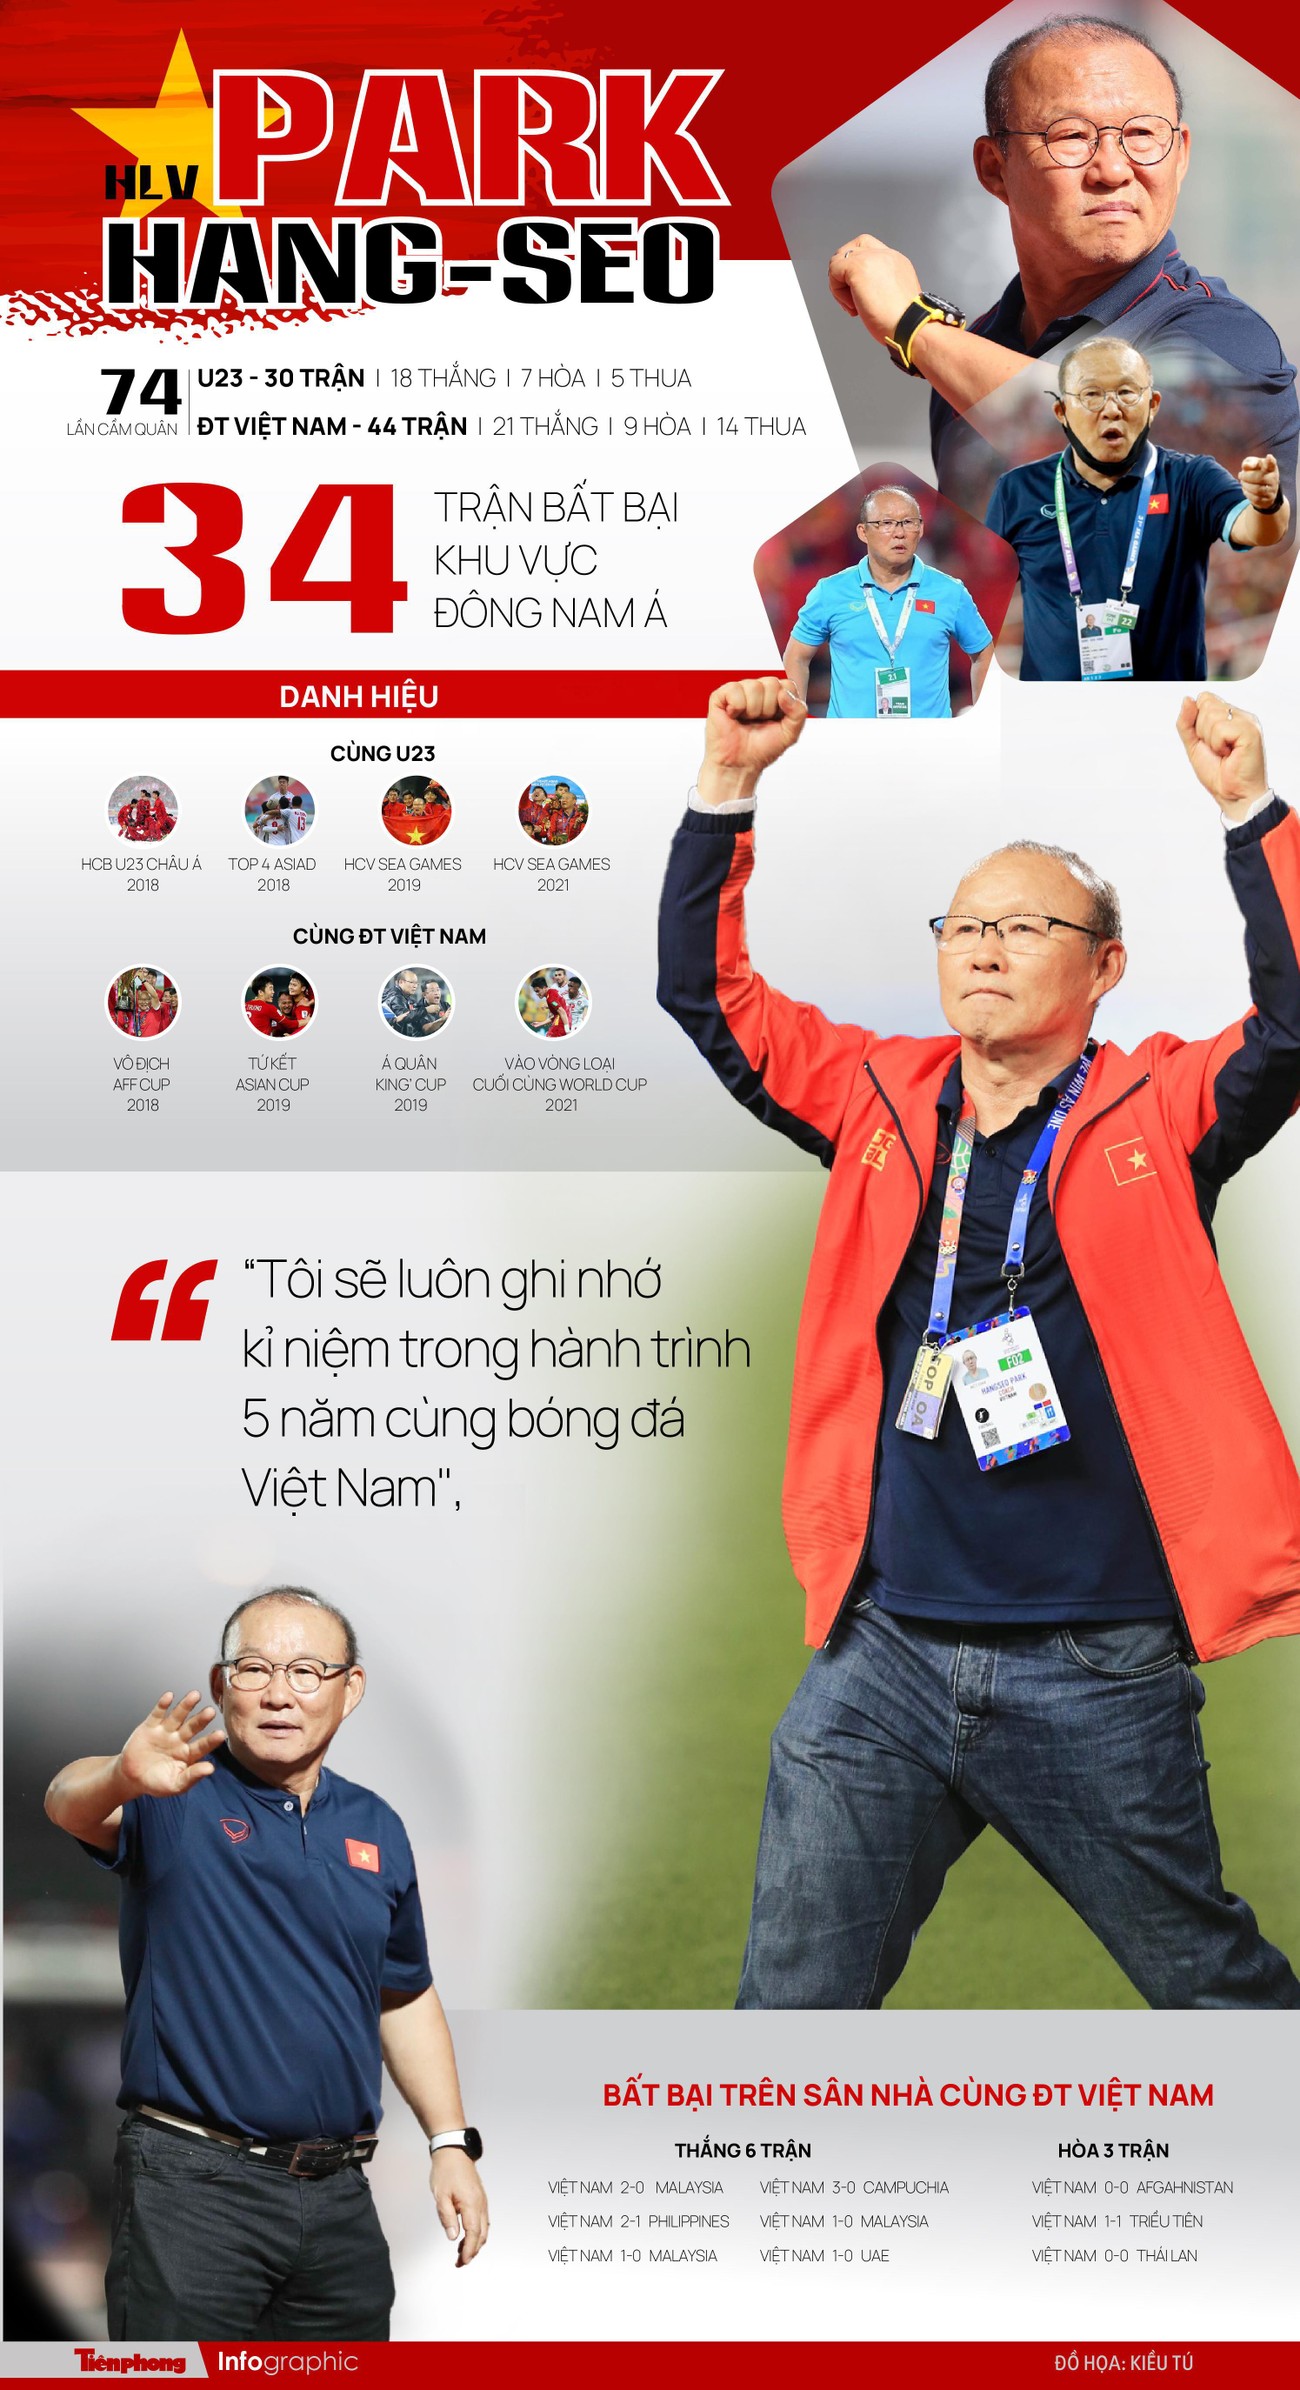 Hành trình 5 năm cùng bóng đá Việt Nam của HLV Park Hang-Seo ảnh 1